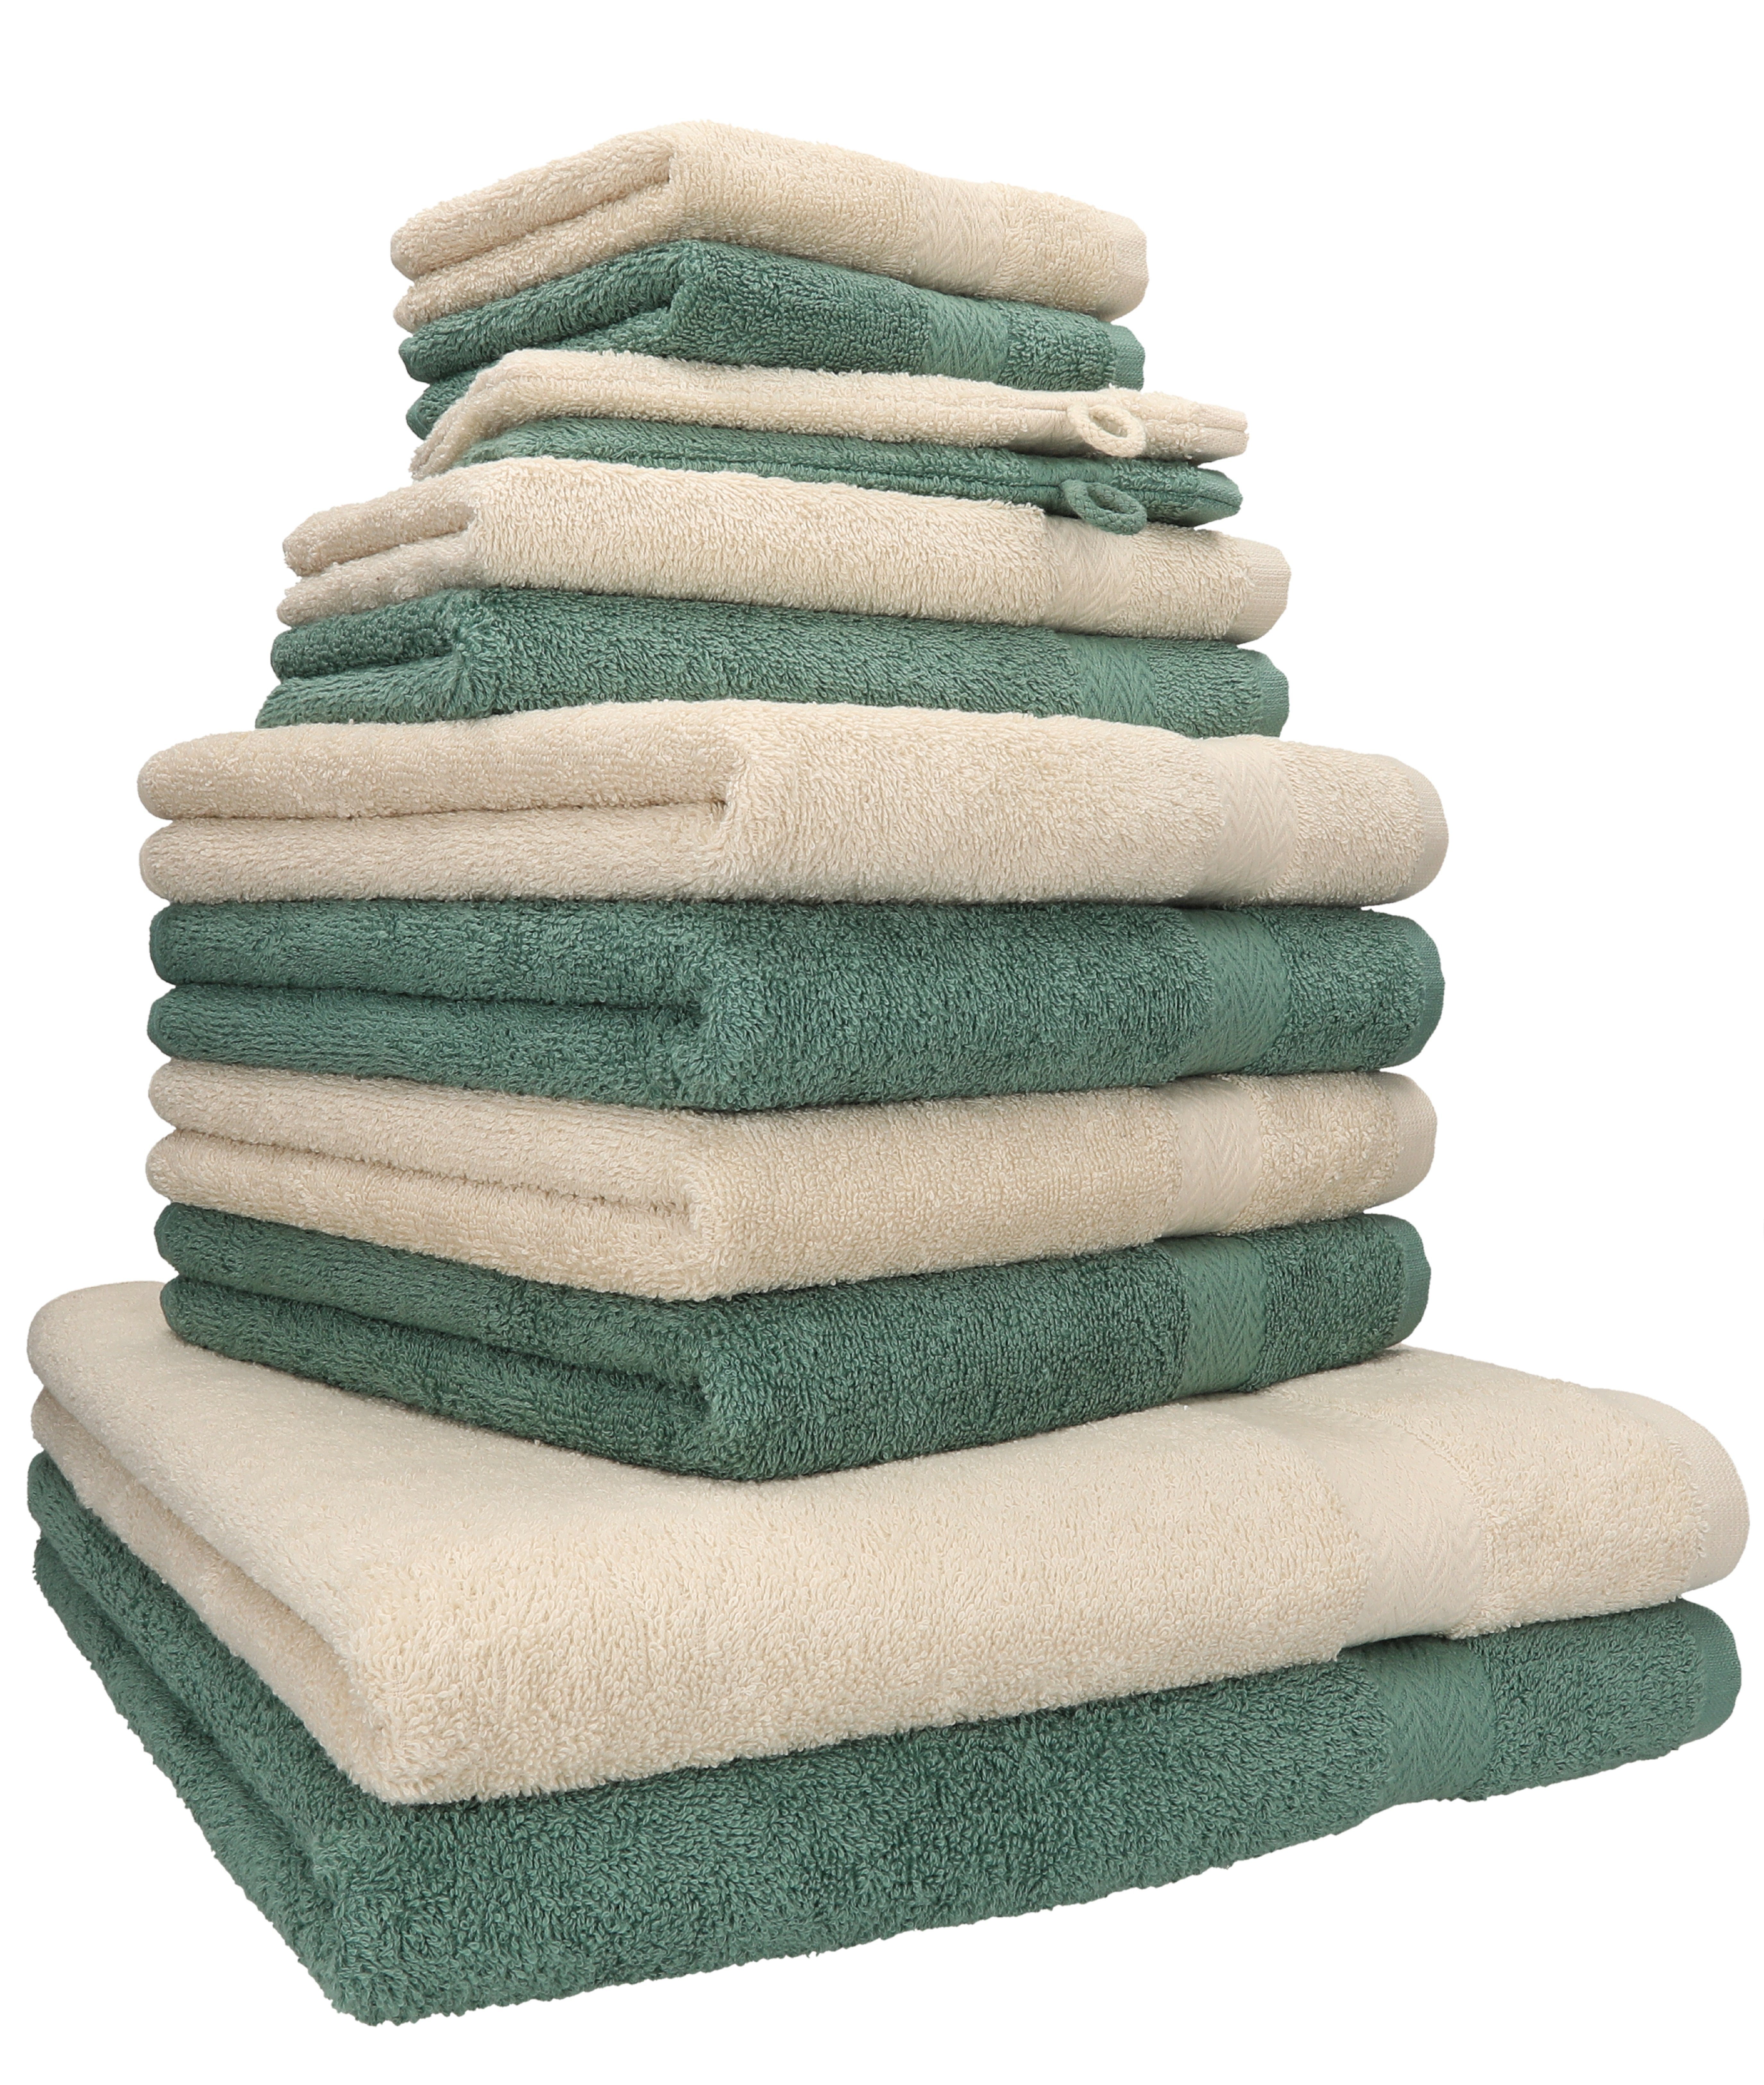 Betz Handtuch Set 12-TLG. Handtuch Set Premium Farbe Sand/tannengrün, 100% Baumwolle, (12-tlg) | Handtuch-Sets